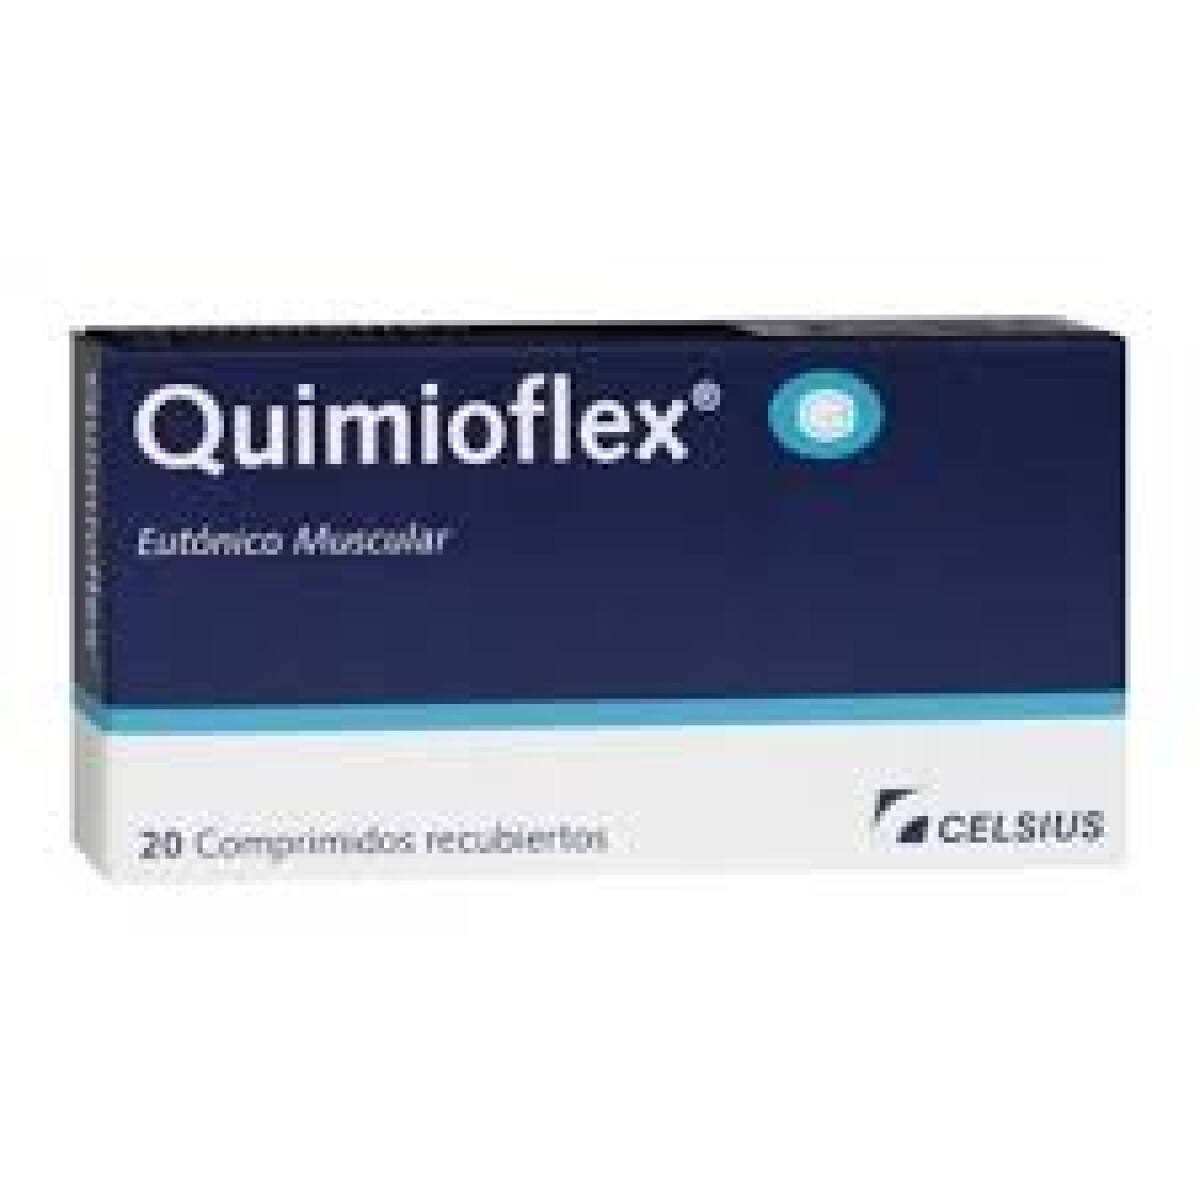 Quimioflex 